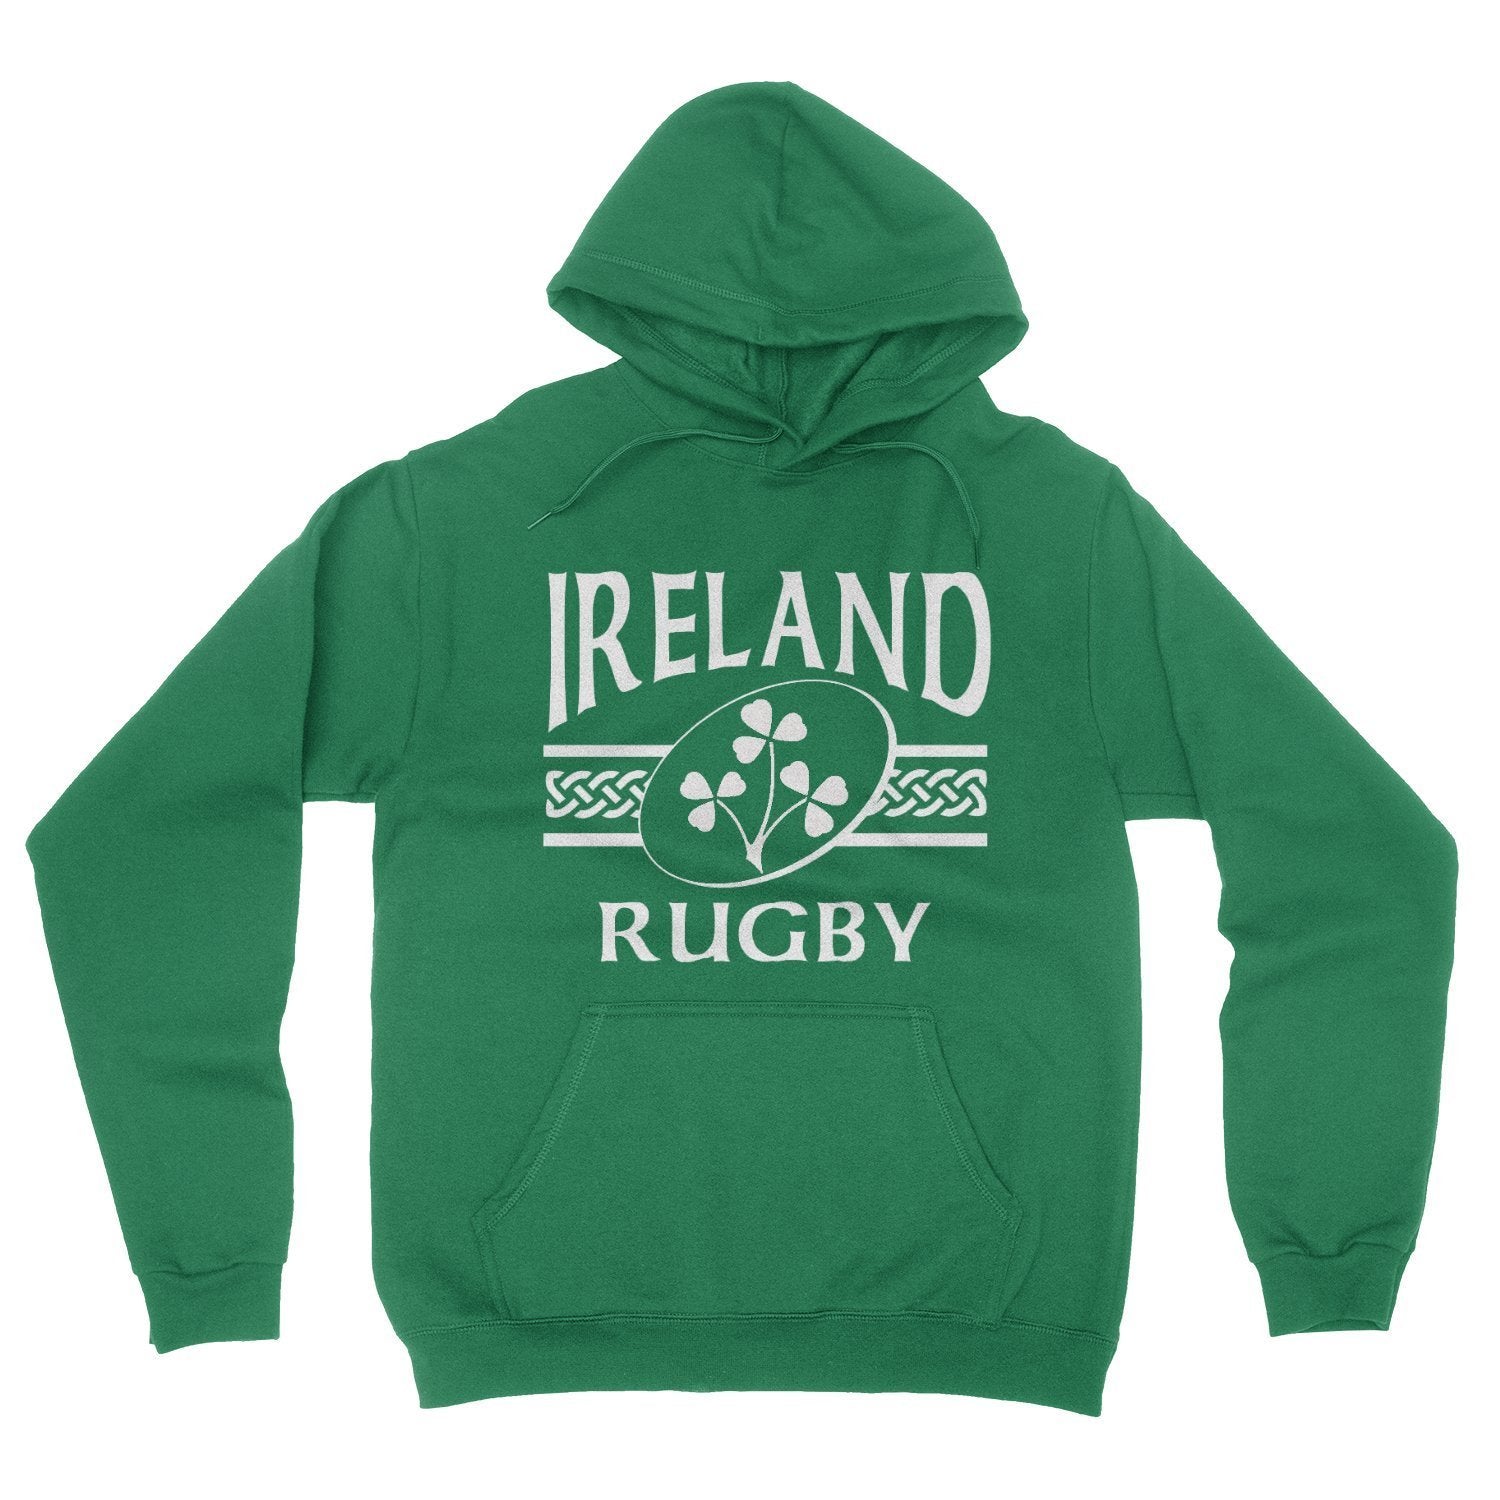 Hoody - Ireland Rugby Hoody